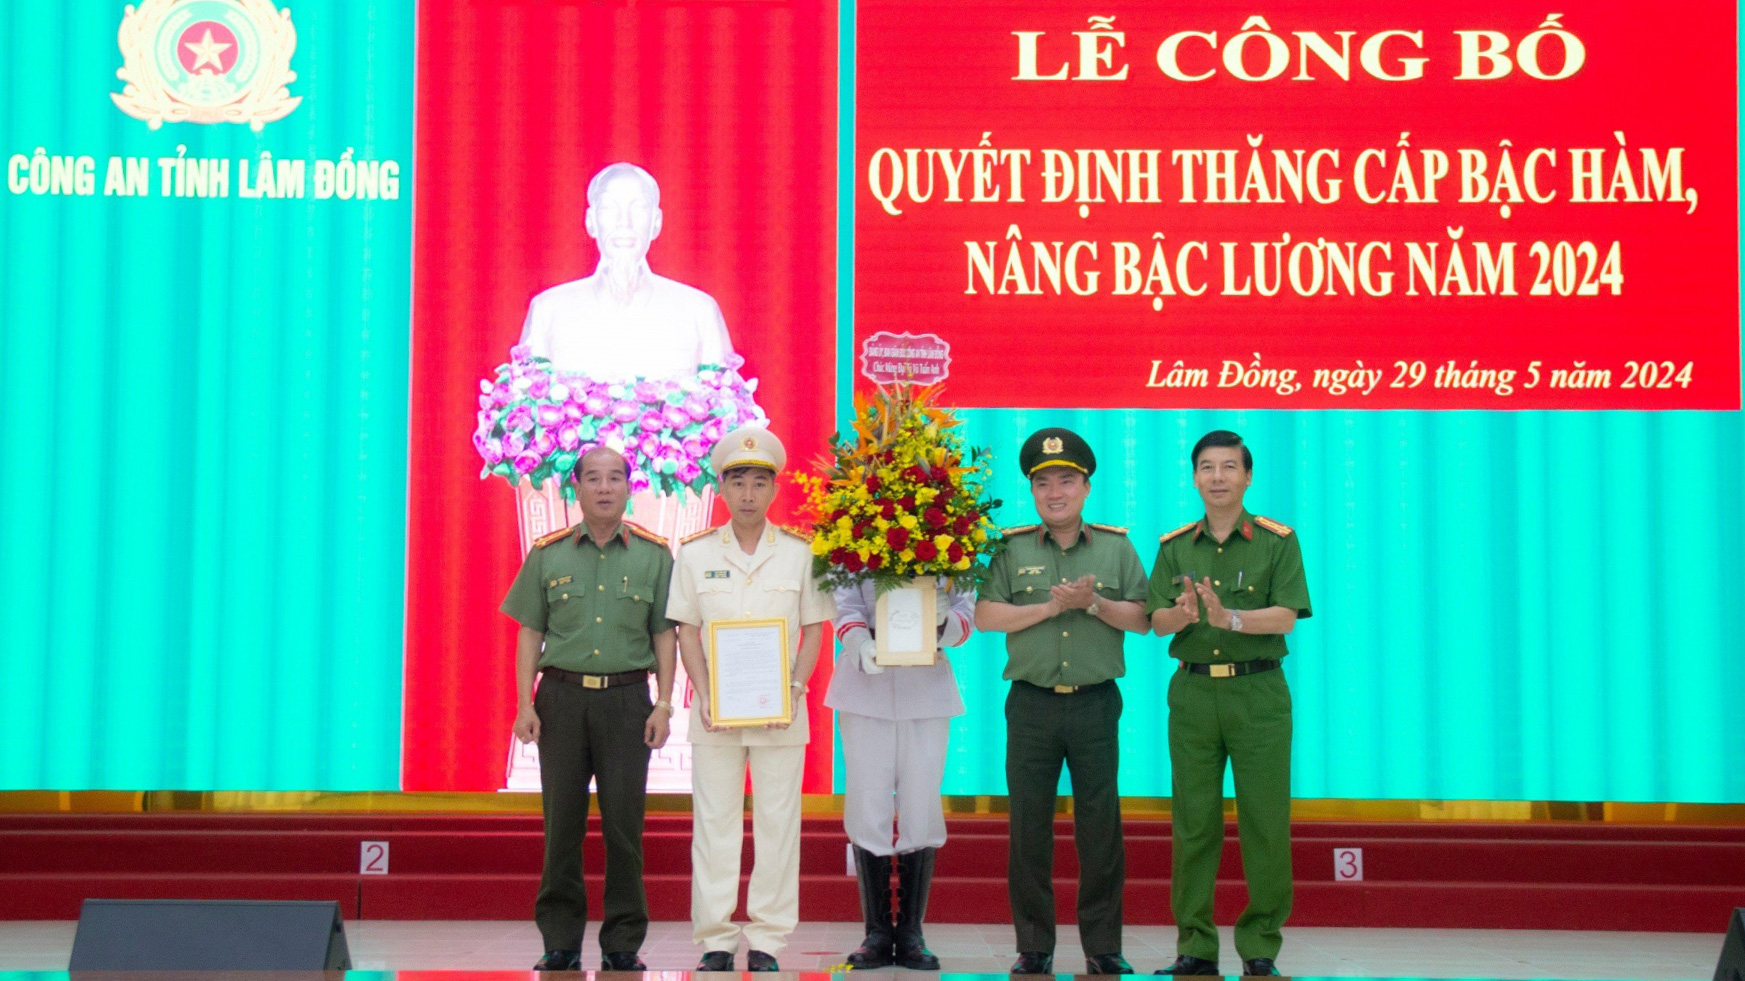 Ban Giám đốc Công an tỉnh chúc mừng Đại tá Vũ Tuấn Anh - Phó Giám đốc Công an tỉnh